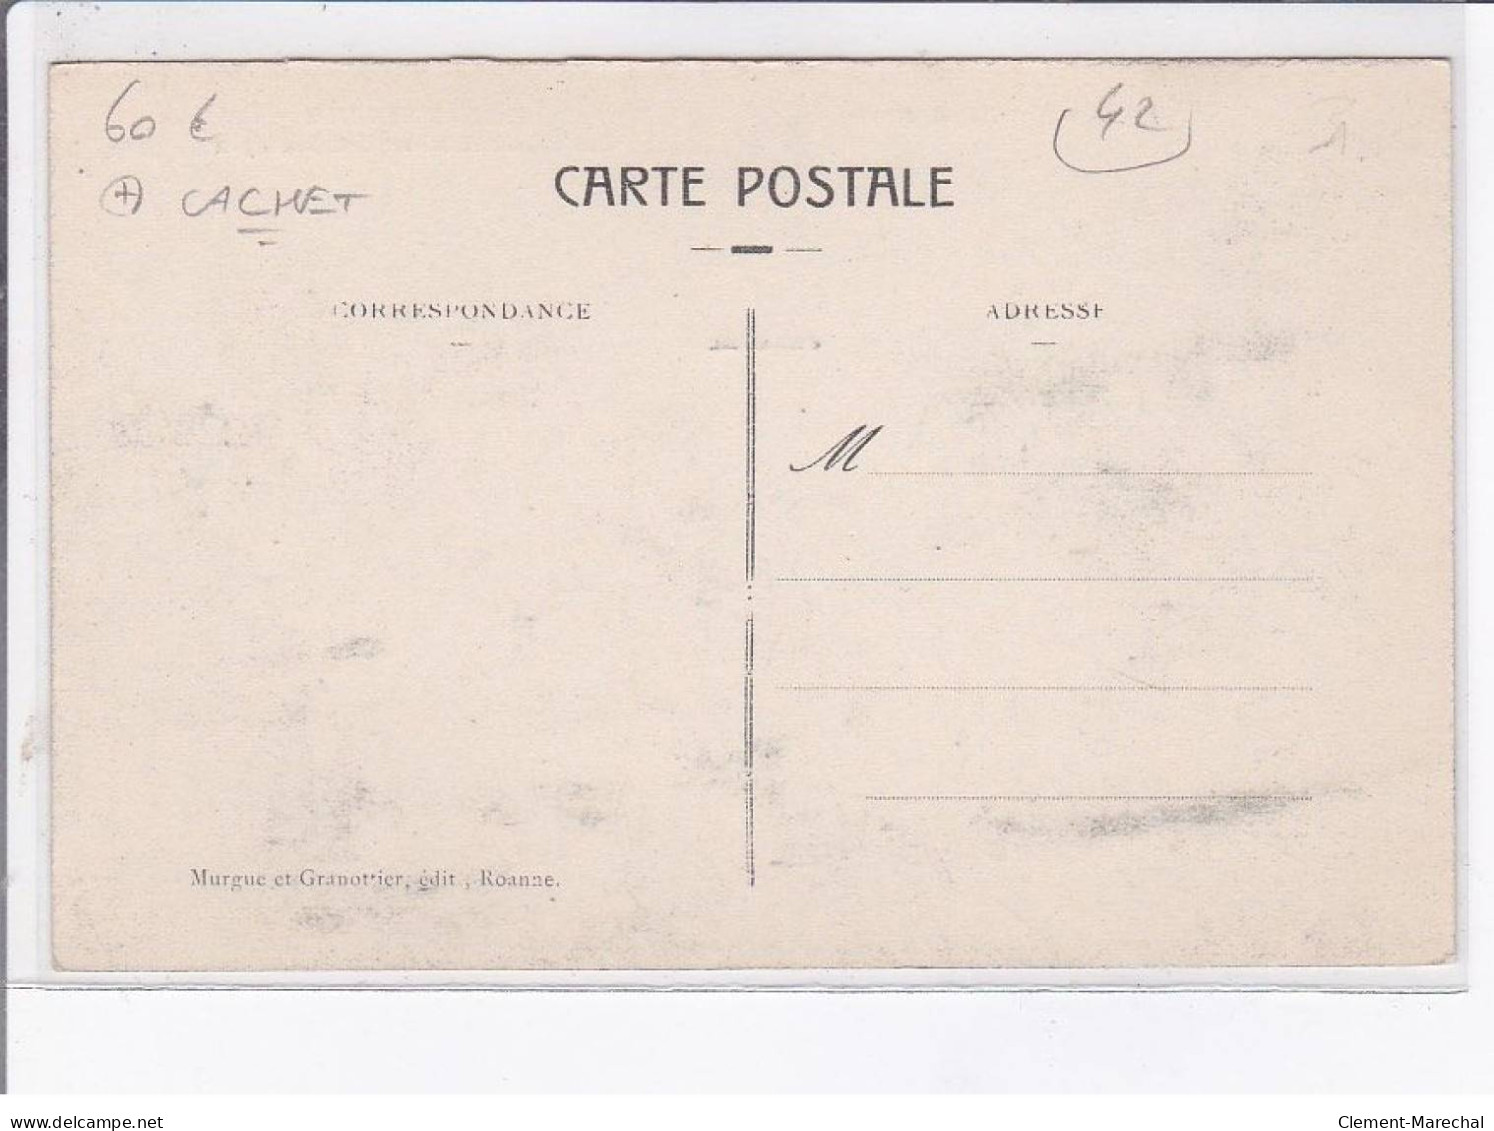 ROANNE: Rue De Paris, Champel, Fêtes D'aviation Des 21 22 23 Septembre 1912, Cachet - Très Bon état - Roanne